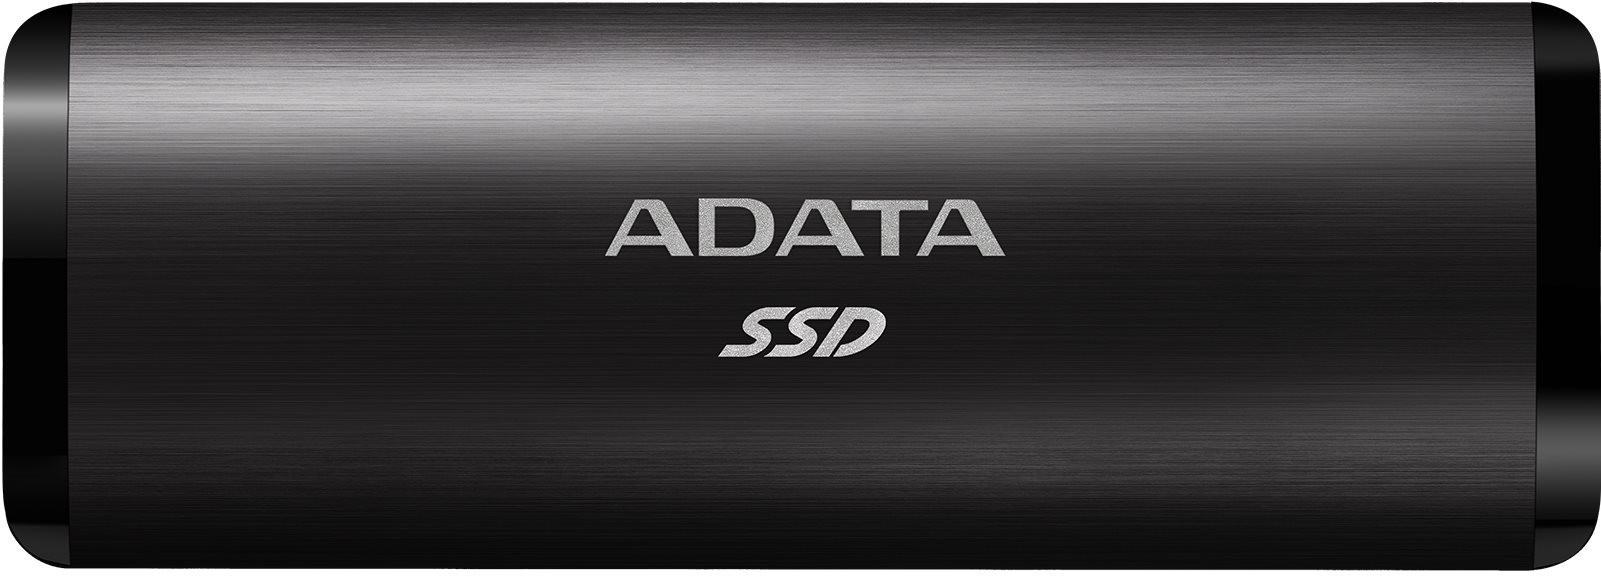 Külső merevlemez ADATA SE760 256GB fekete színű